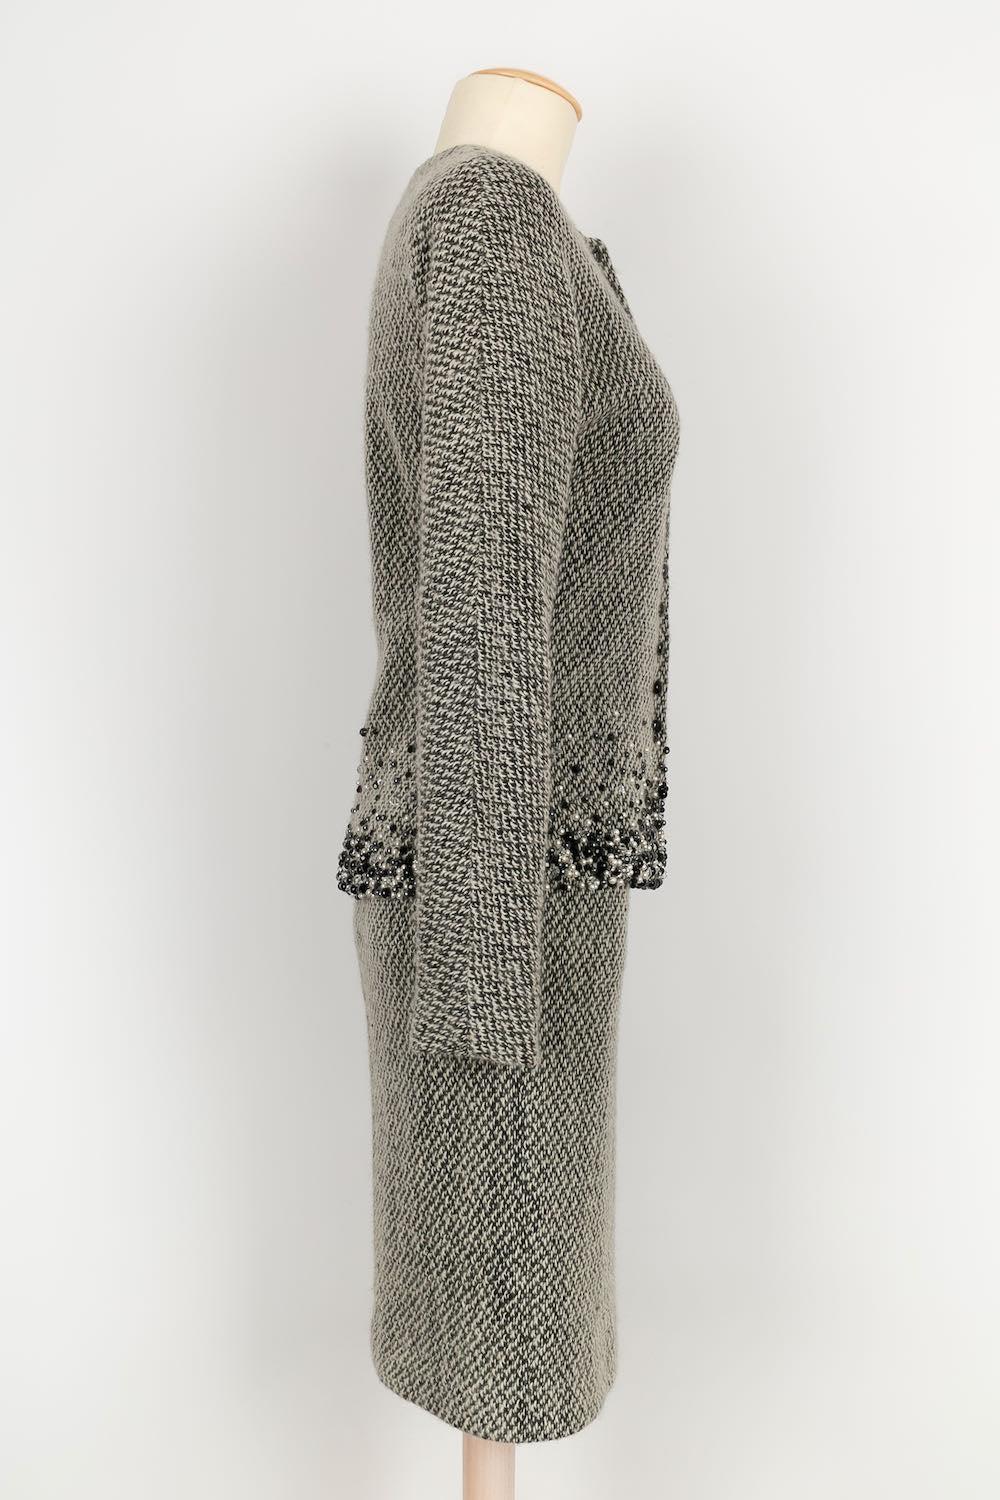 Dior -(Fabriqué en France) Costume en laine et soie. Taille indiquée 36FR, elle correspond à un 34FR/36FR.
Collectional Hiver 2001.

Informations complémentaires : 

Dimensions : 
Veste : 
Largeur des épaules : 44 cm, Poitrine : 41 cm, Taille : 35